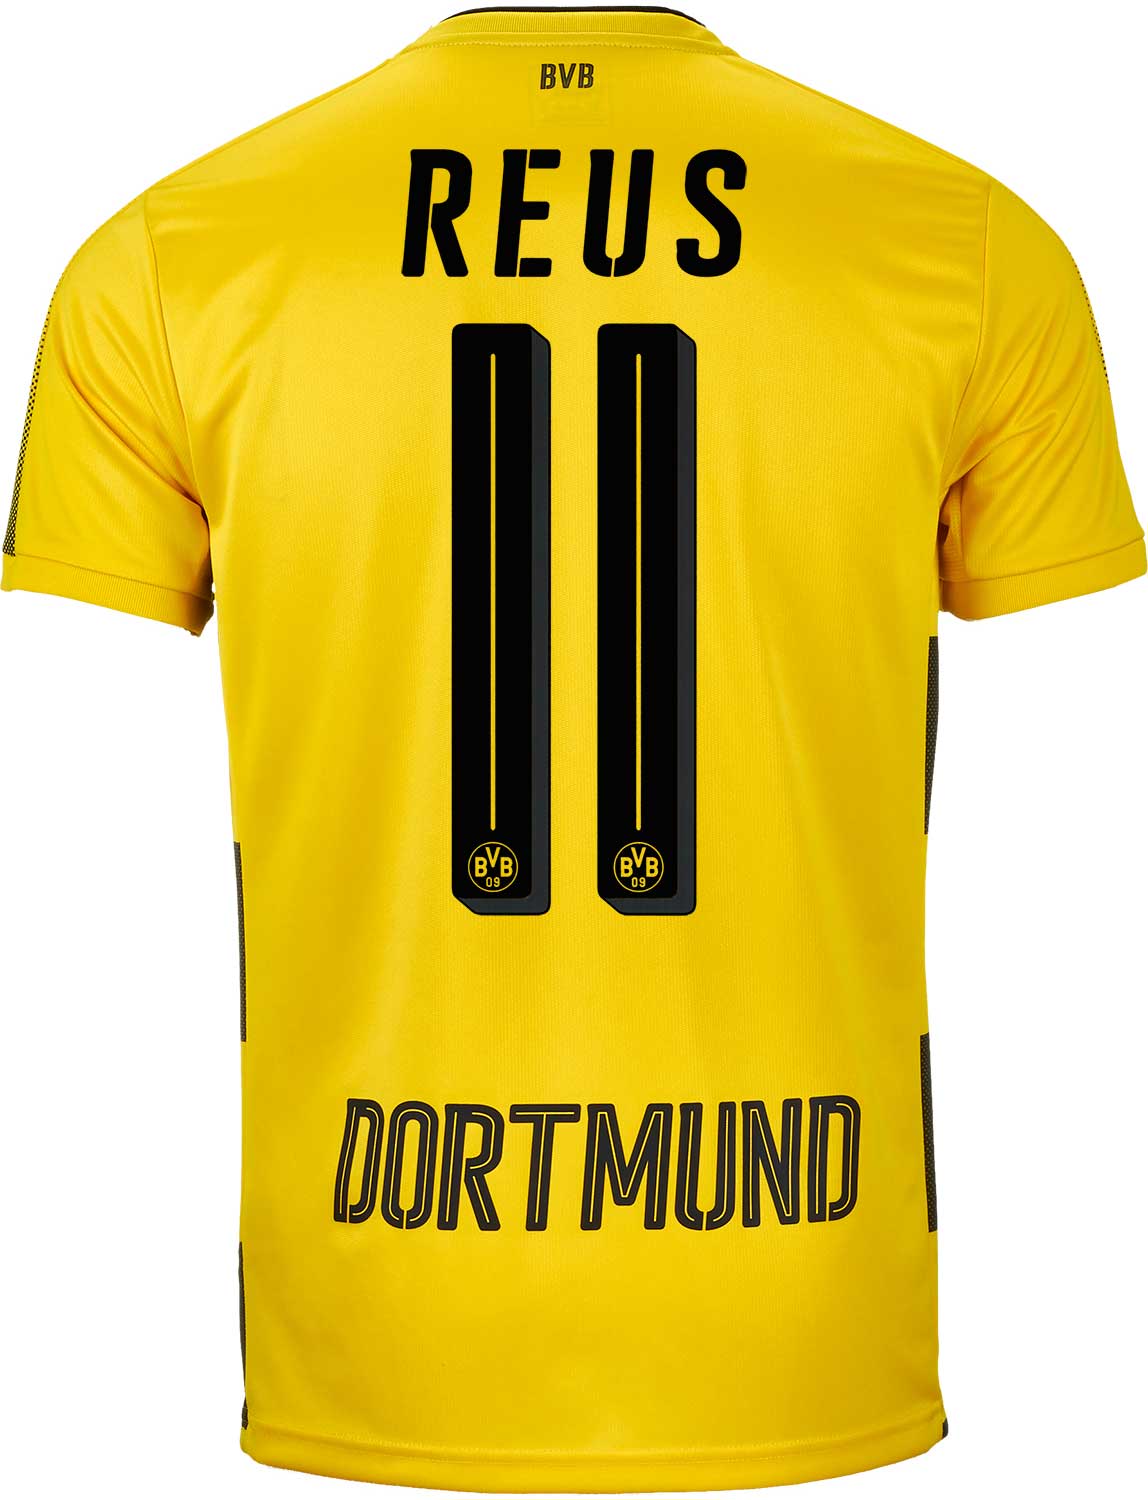 Dortmund Reus Jersey : Best Cheap Dortmund REUS 11 Home Jersey 2020/